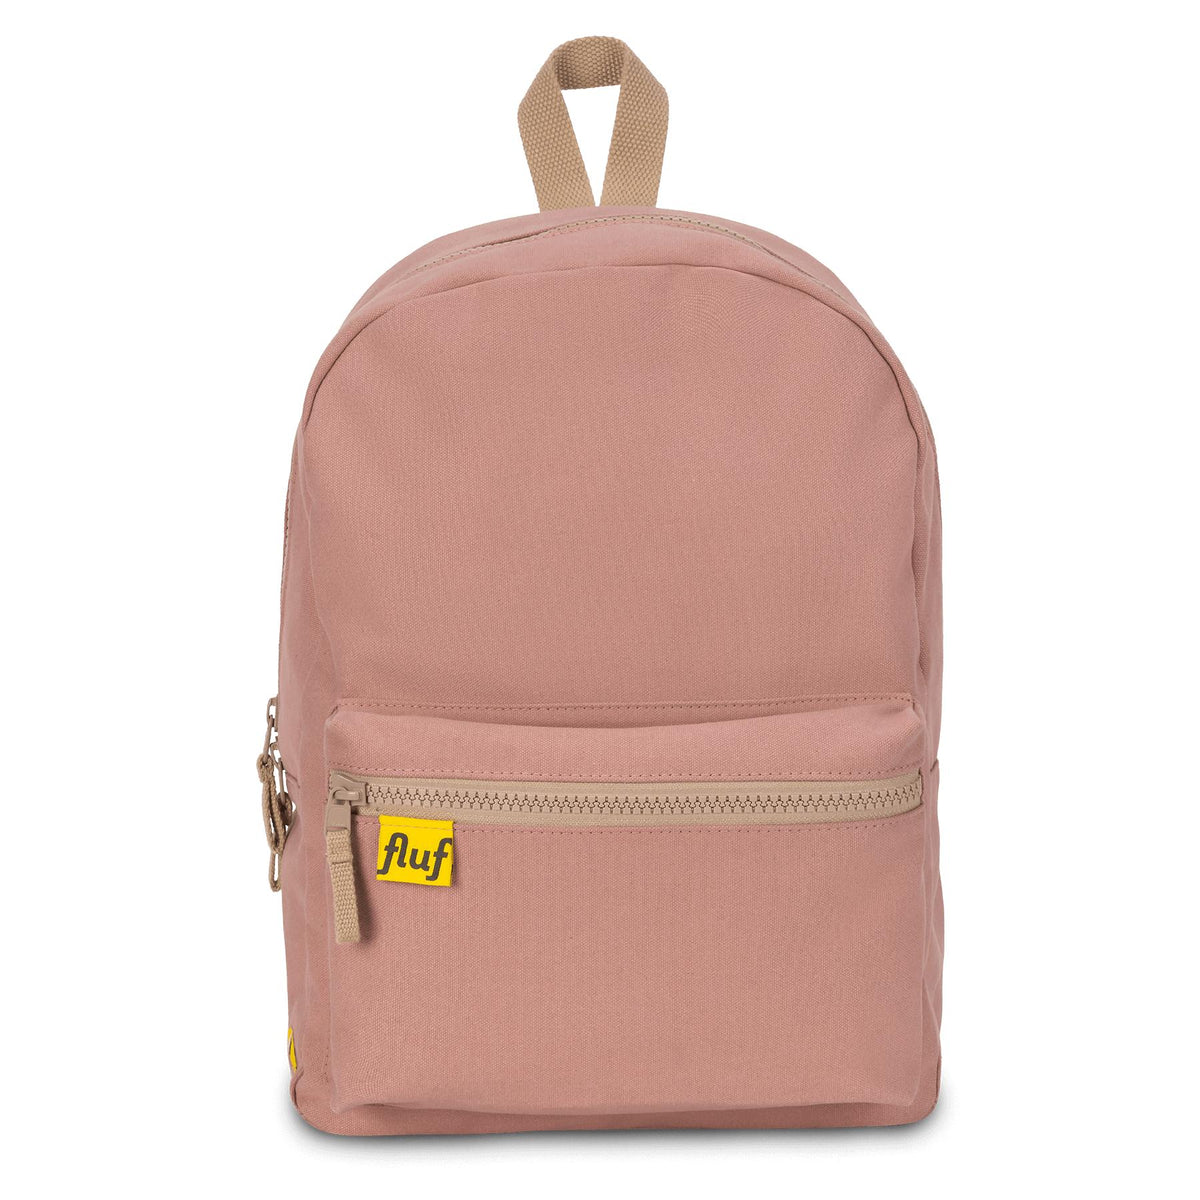 B Pack - Mauve / Pink